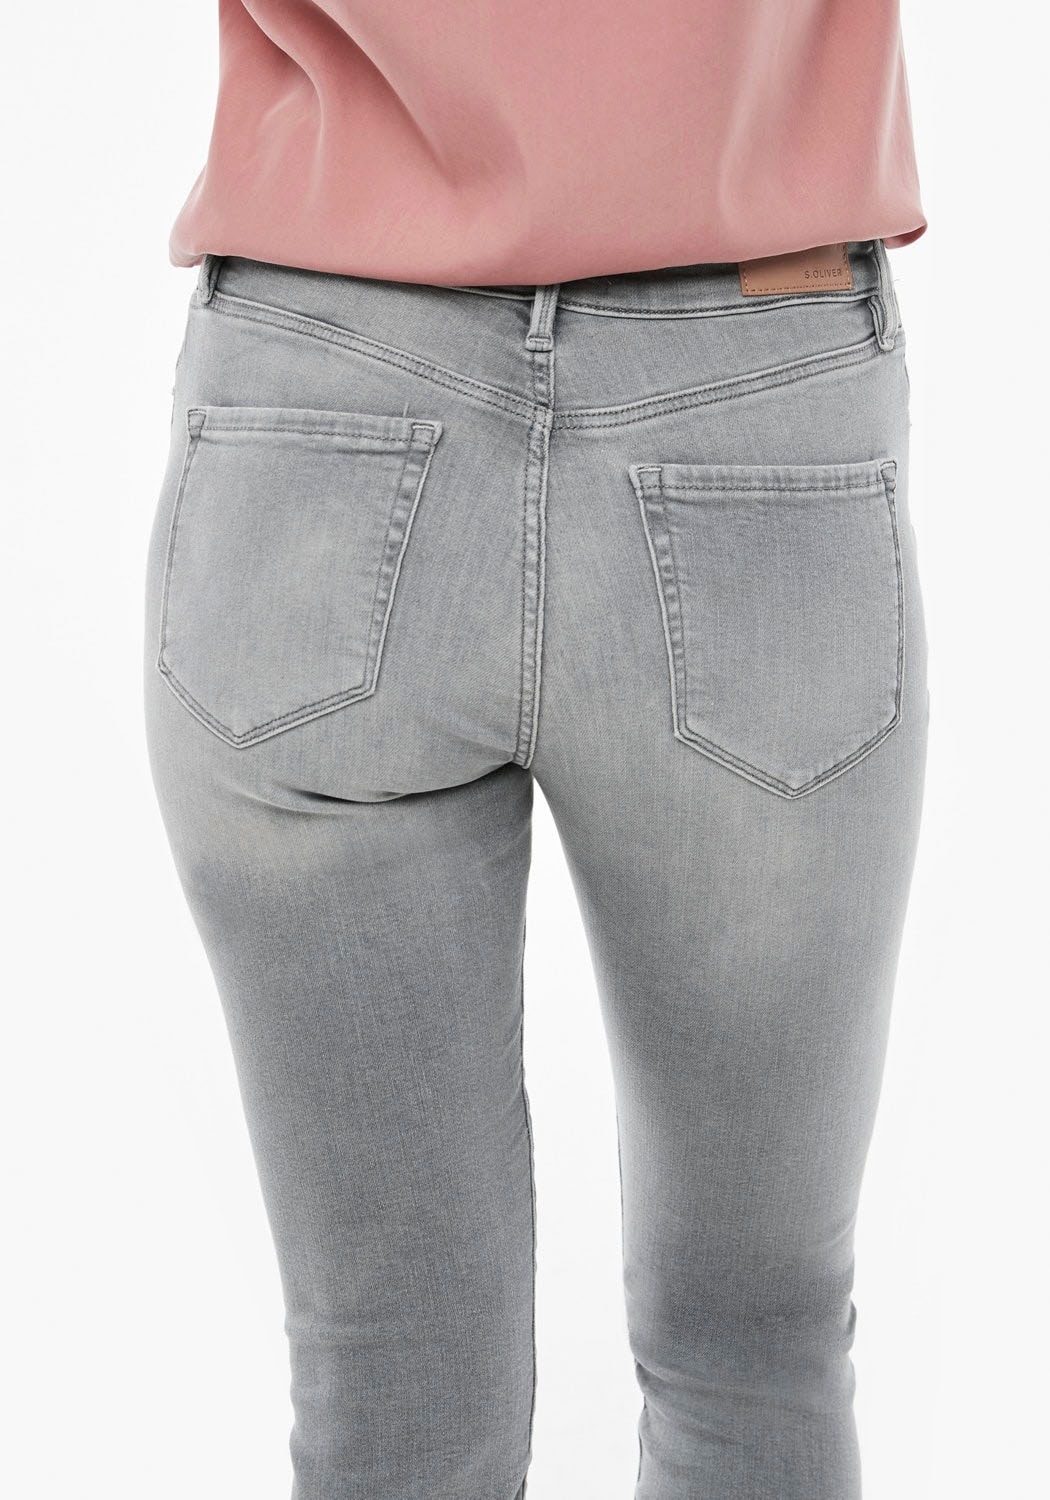 s.Oliver Skinny-fit-Jeans, in coolen, Waschungen bei unterschiedlichen OTTOversand